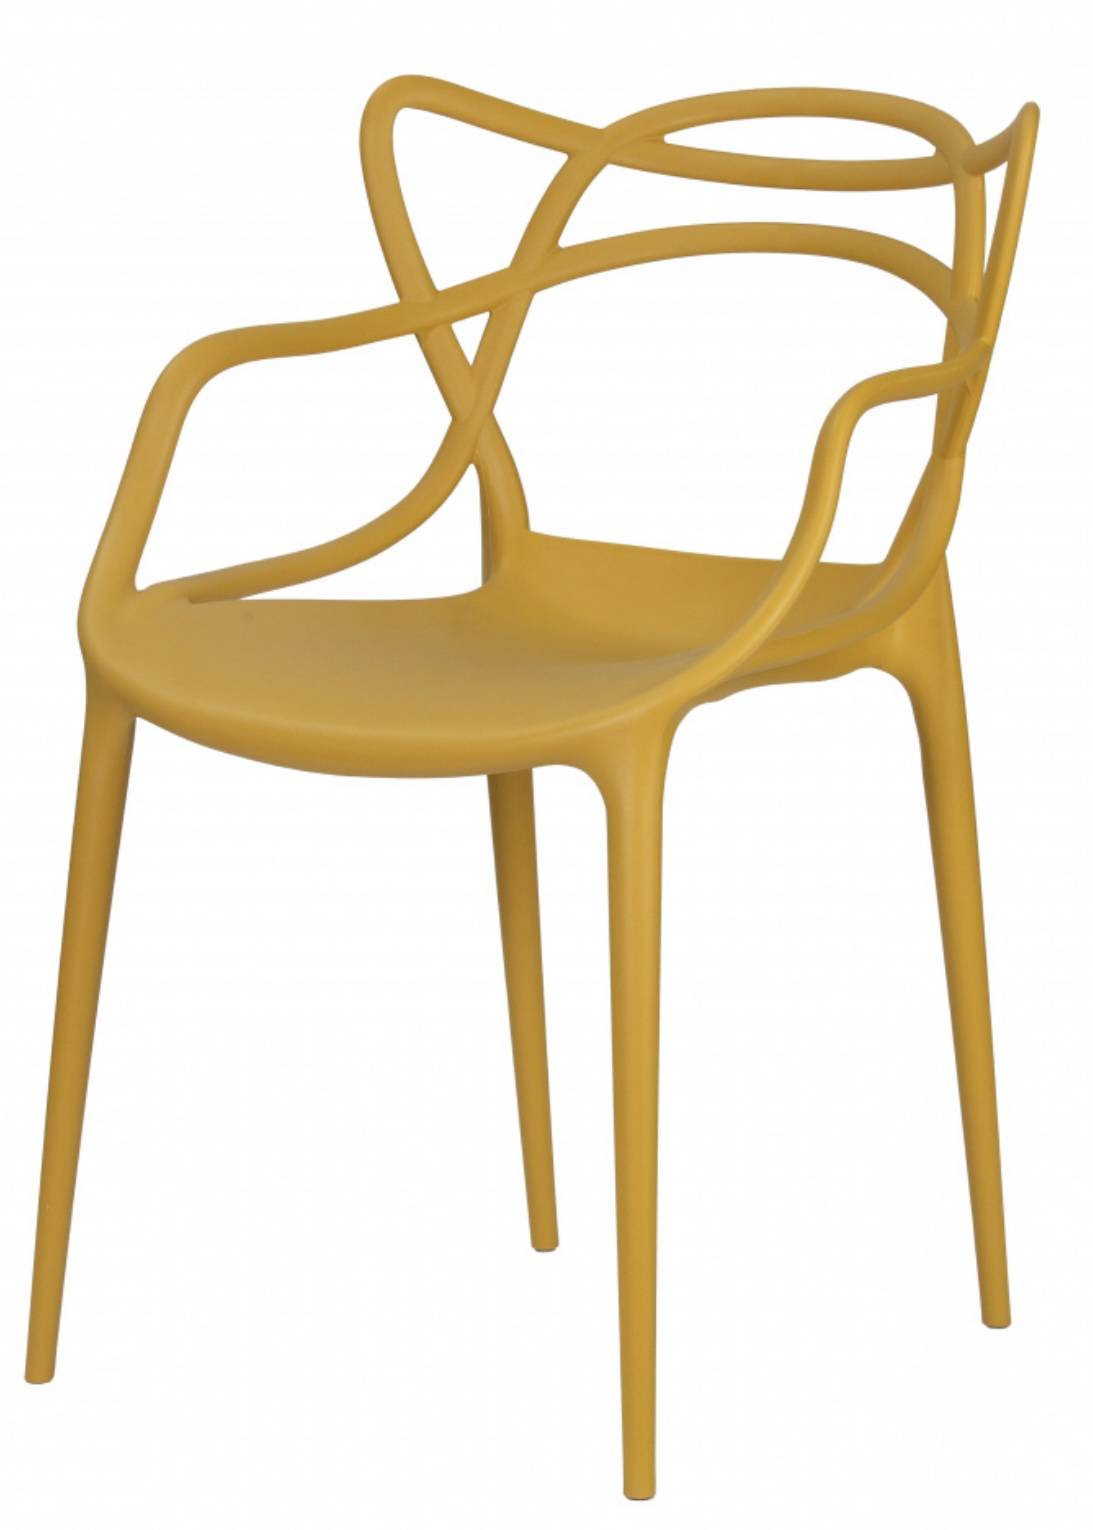 Купить желтый стул Masters в Raroom